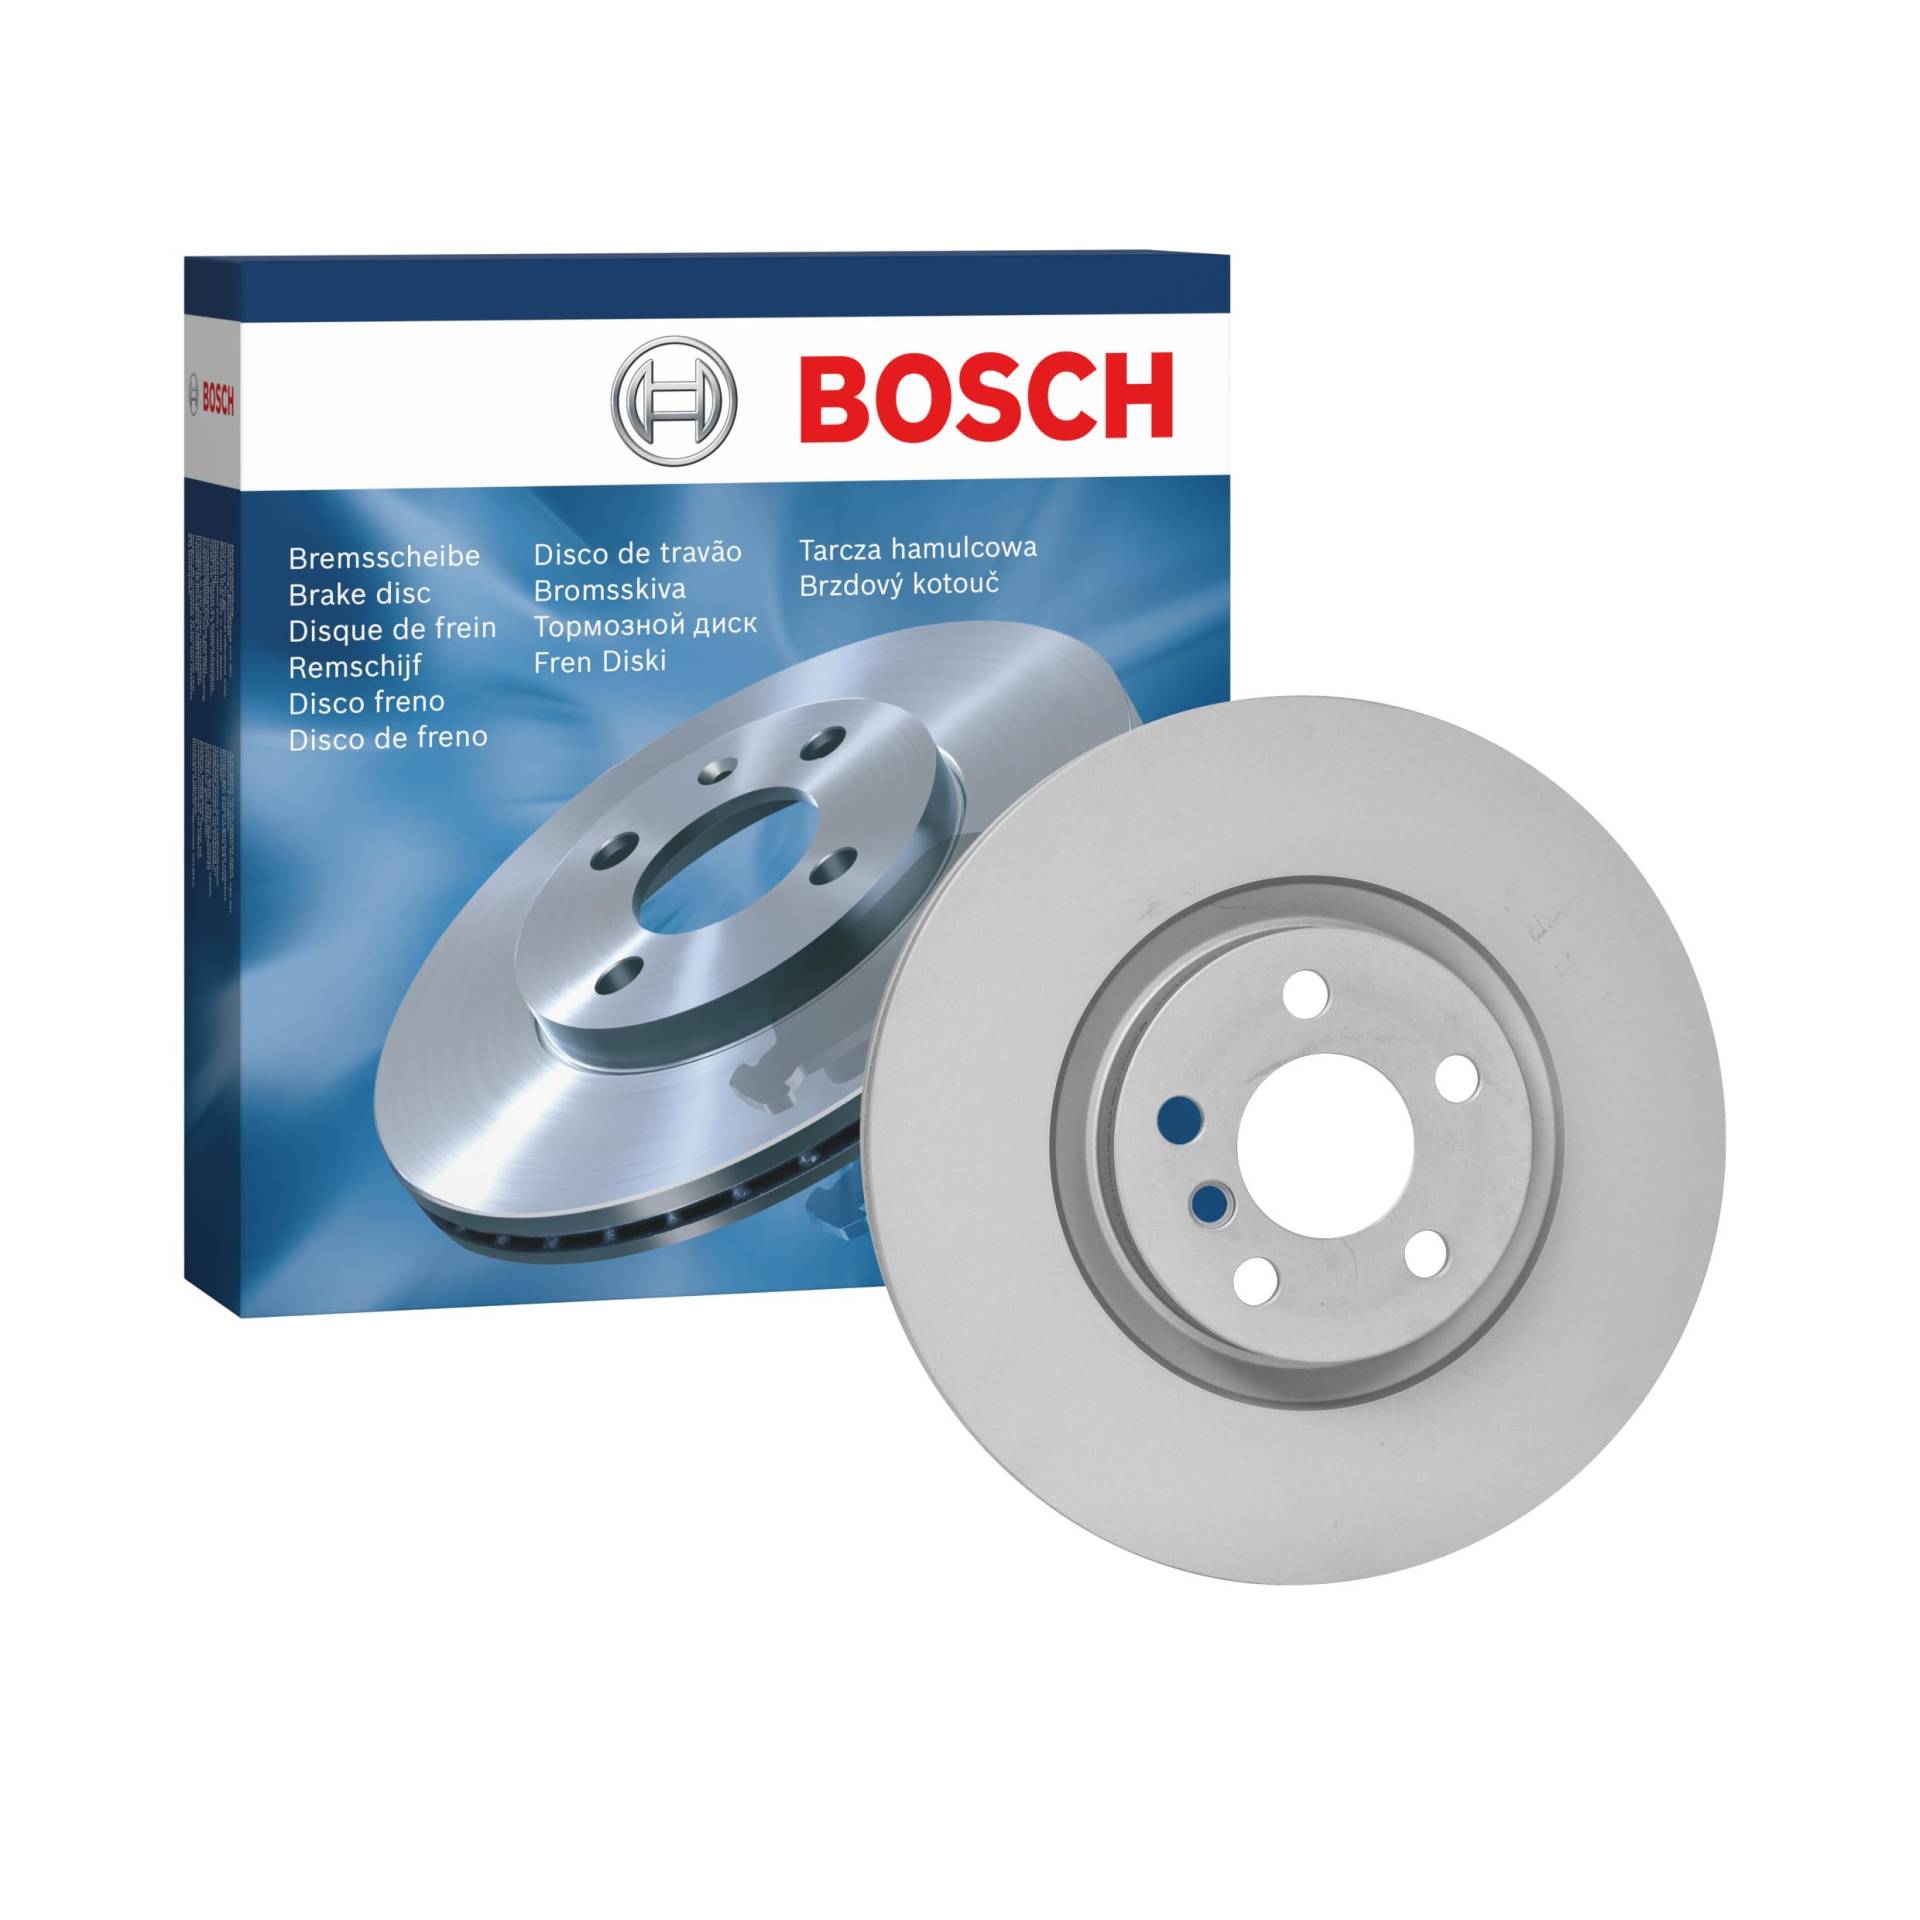 Bosch BD2415 Bremsscheiben - Vorderachse - ECE-R90 Zertifizierung - eine Bremsscheibe von Bosch Automotive